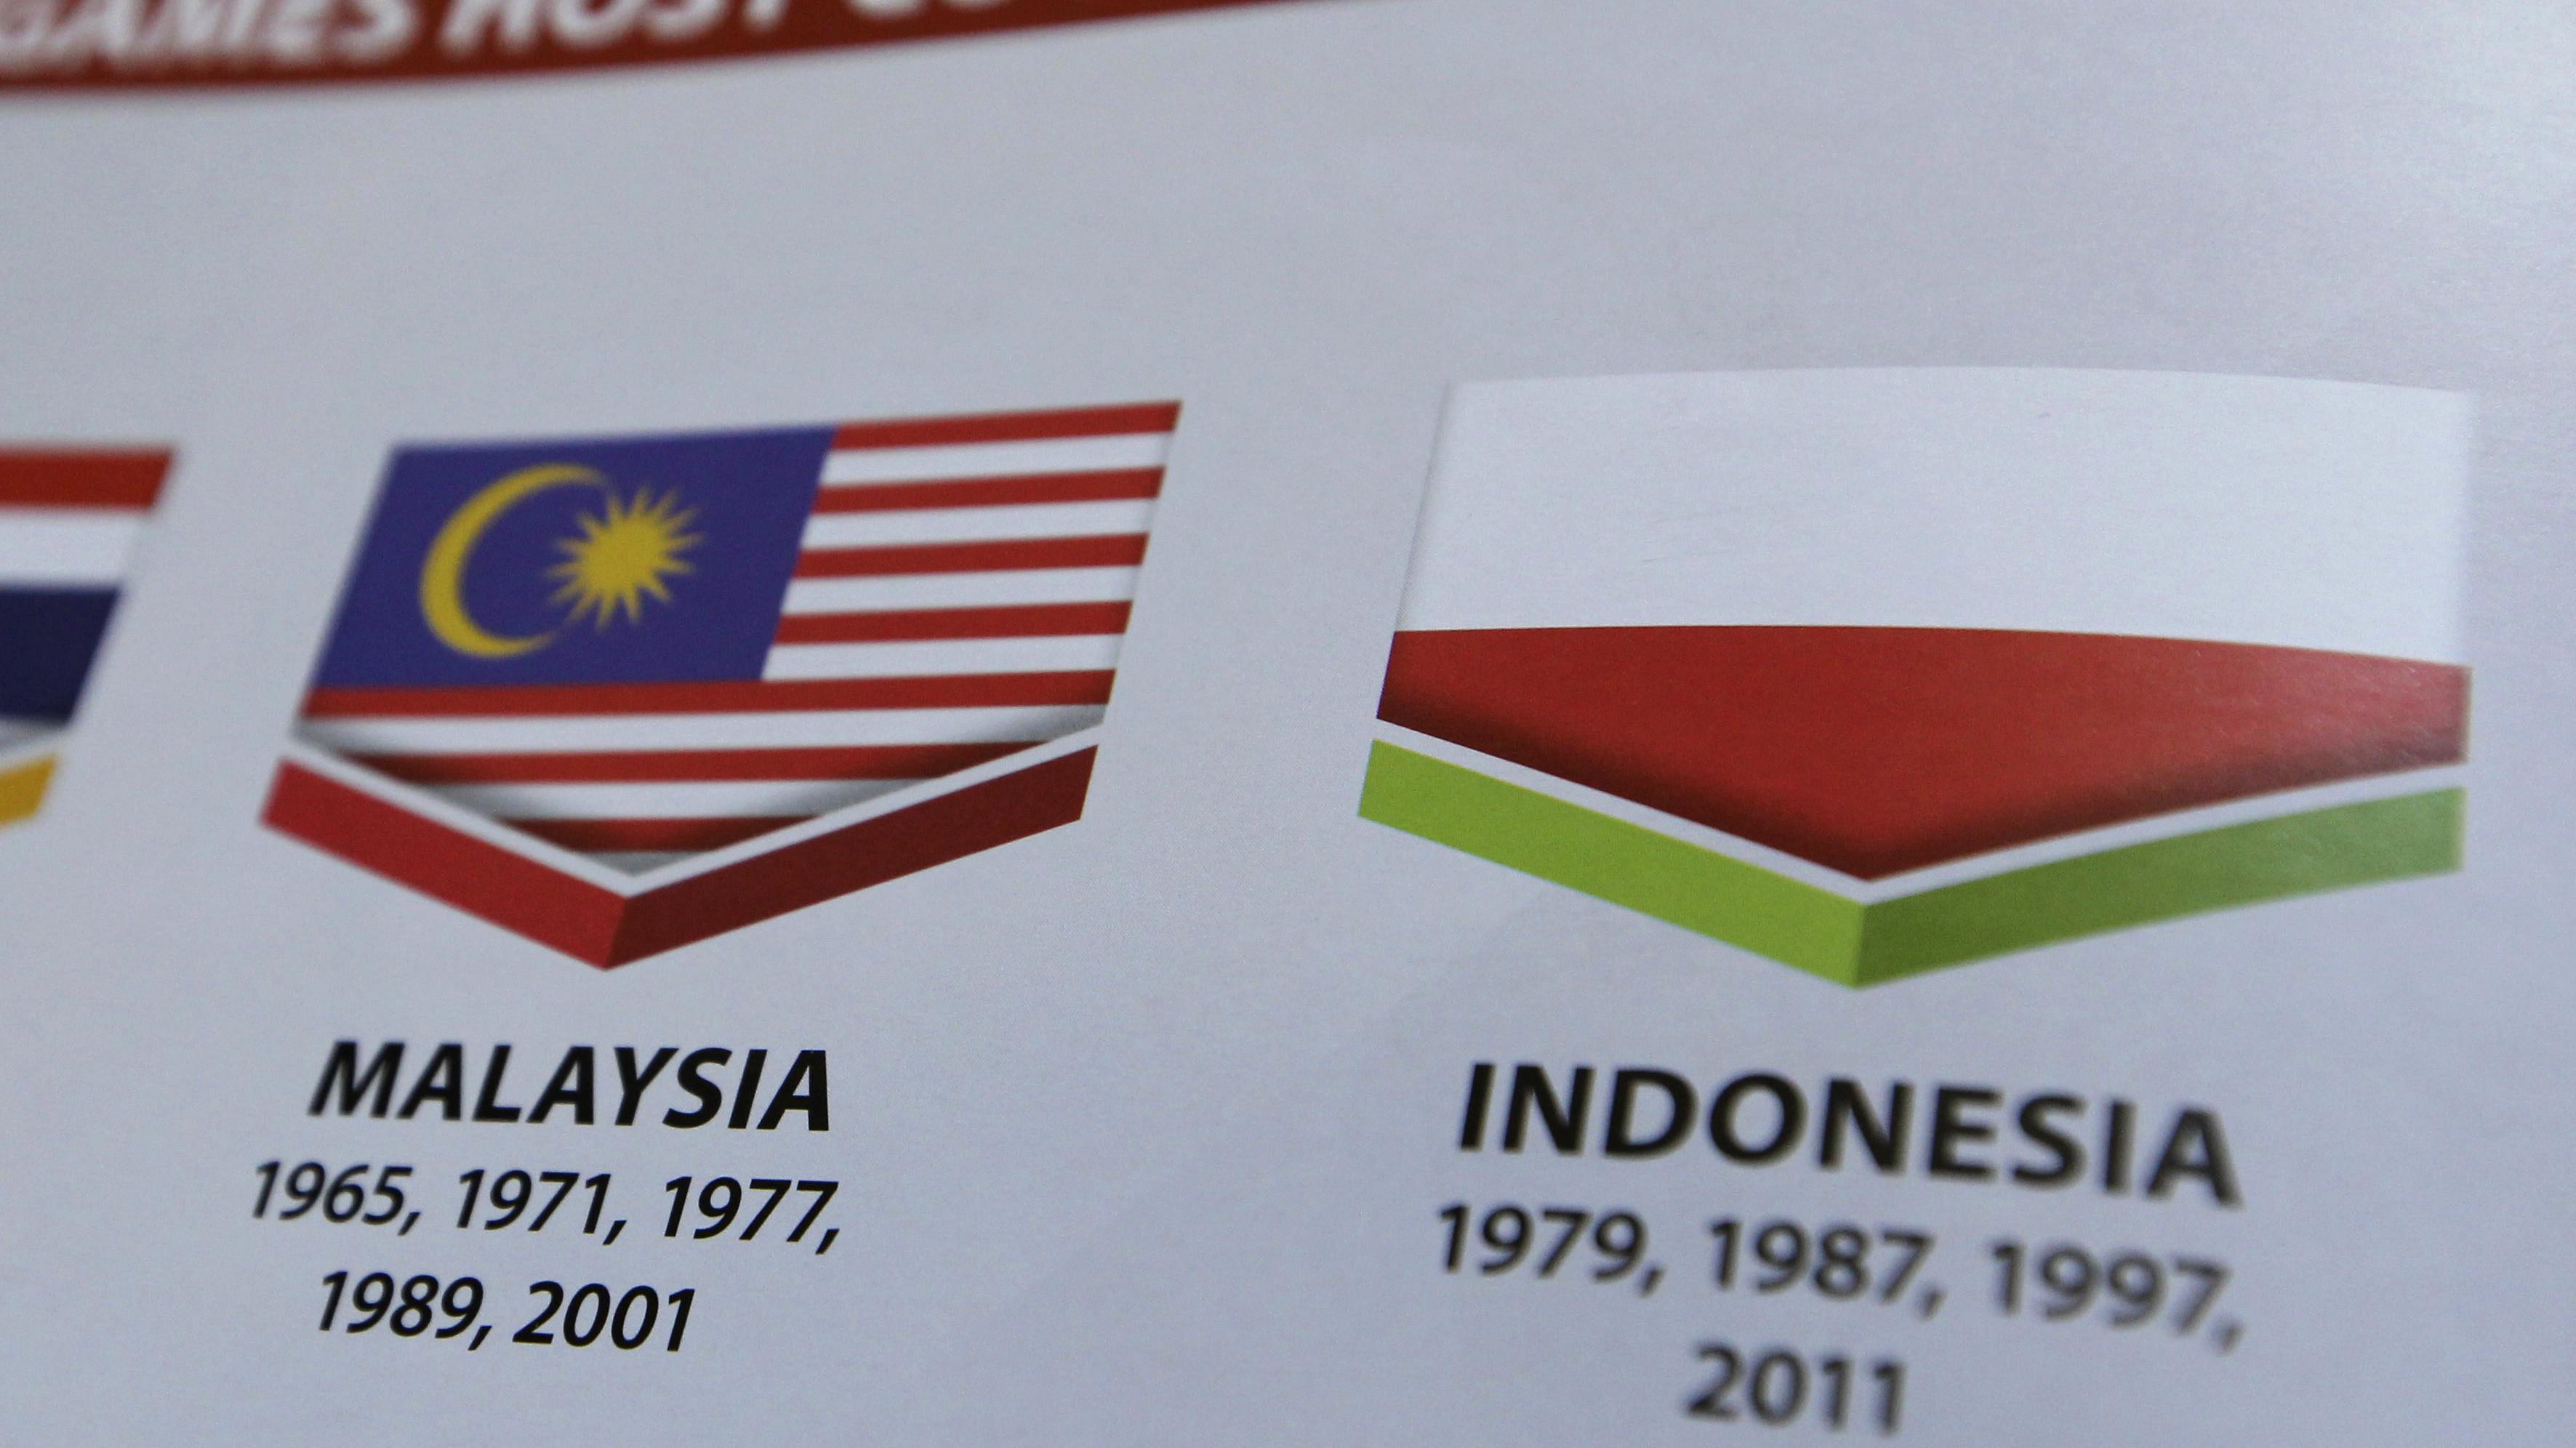 4 Reaksi Anak Bangsa Saat Bendera Indonesia Terbalik Di Malaysia